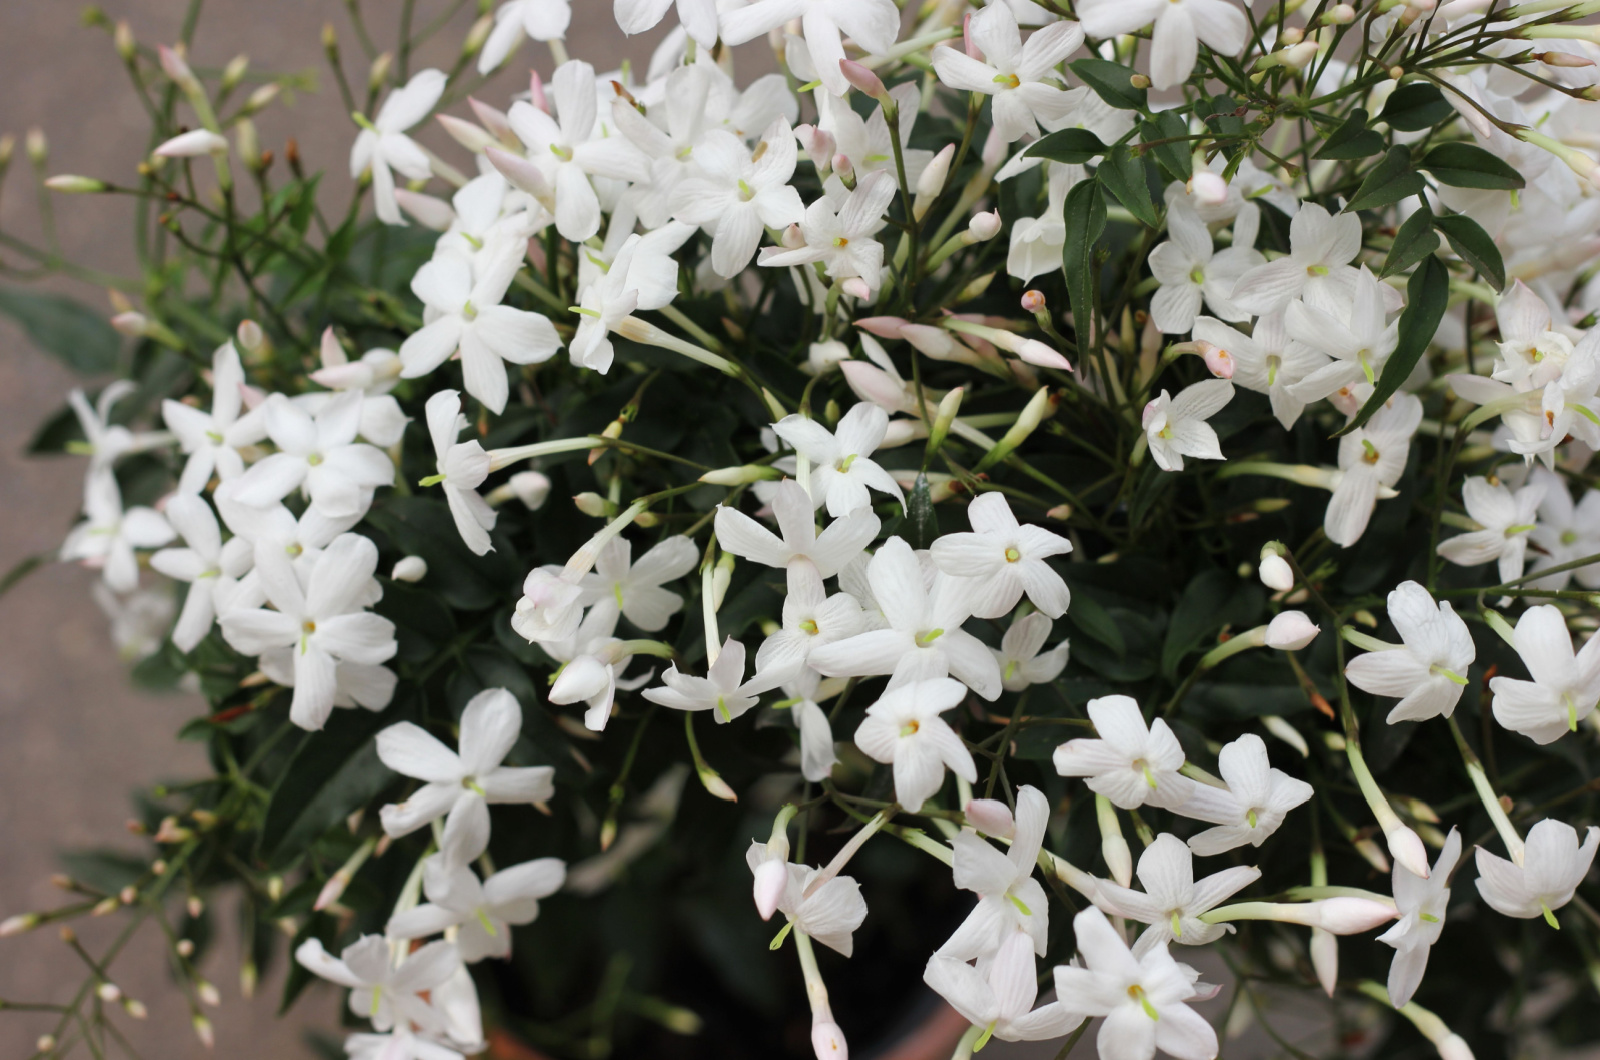 star jasmine in full bloom